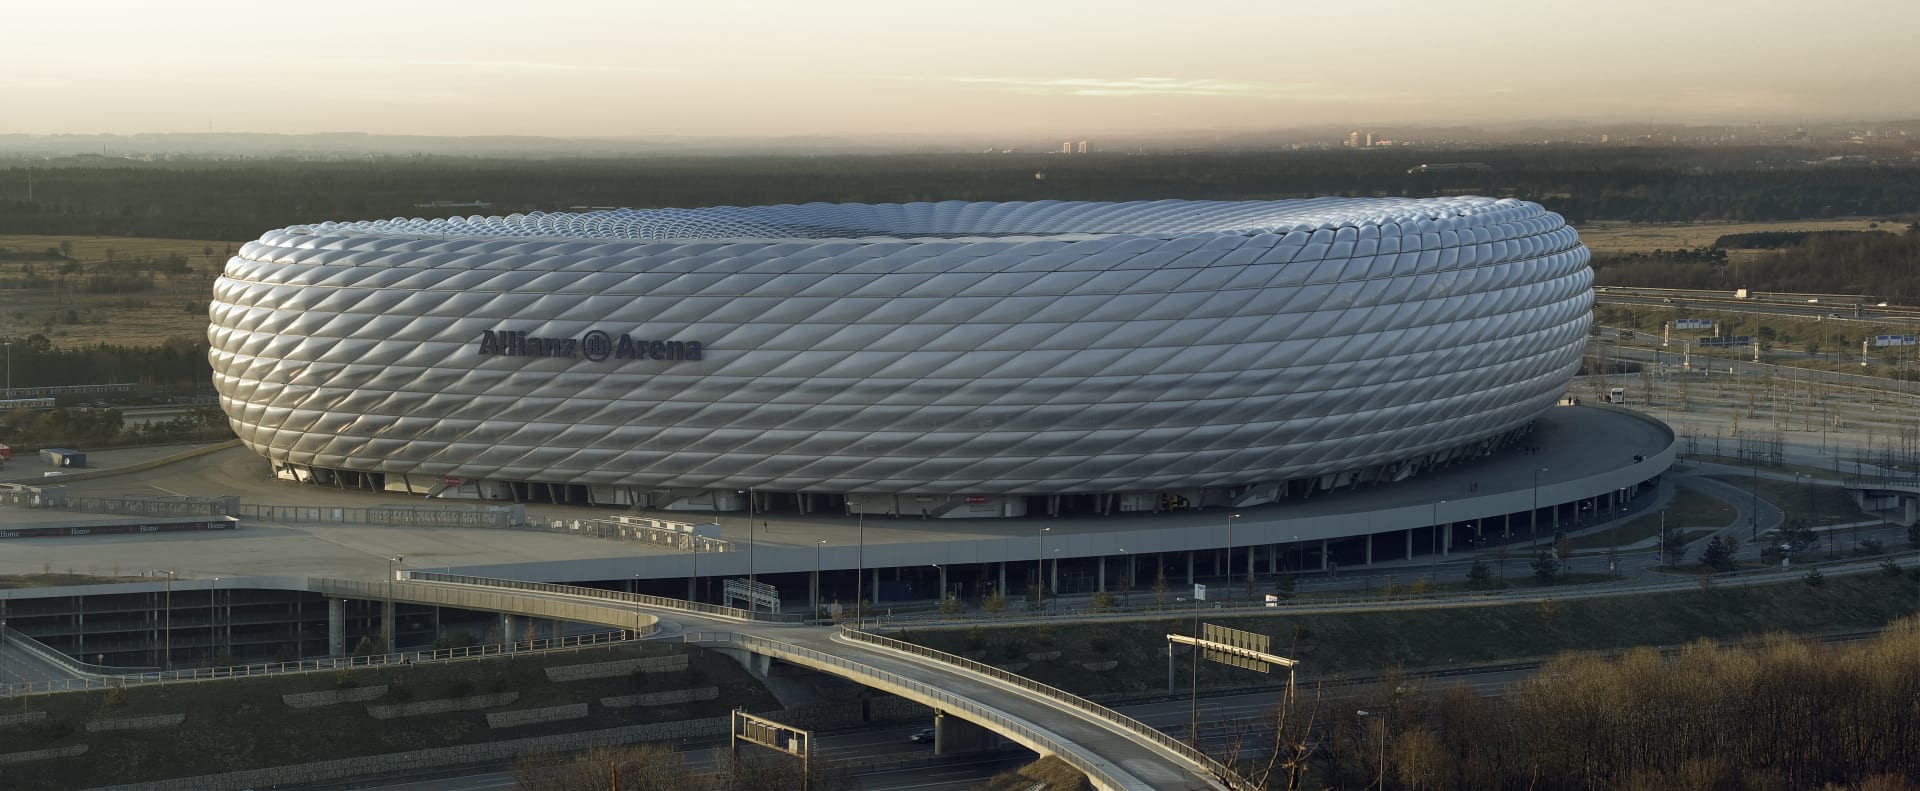 Mnichov – Allianz Arena